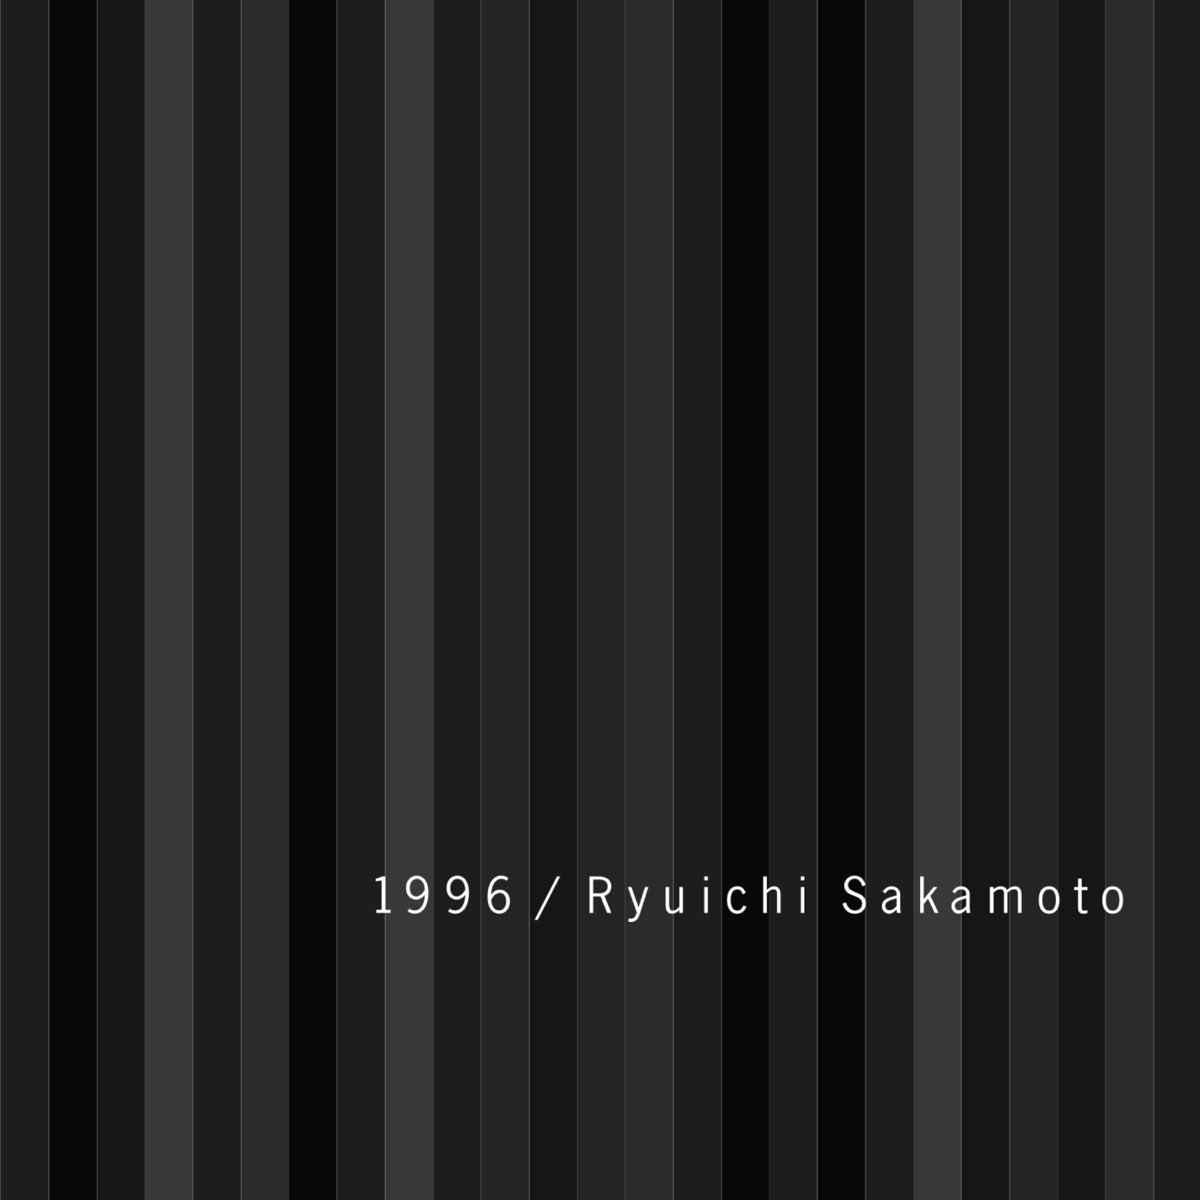 1996 - Album by Ryuichi Sakamoto - Apple Music